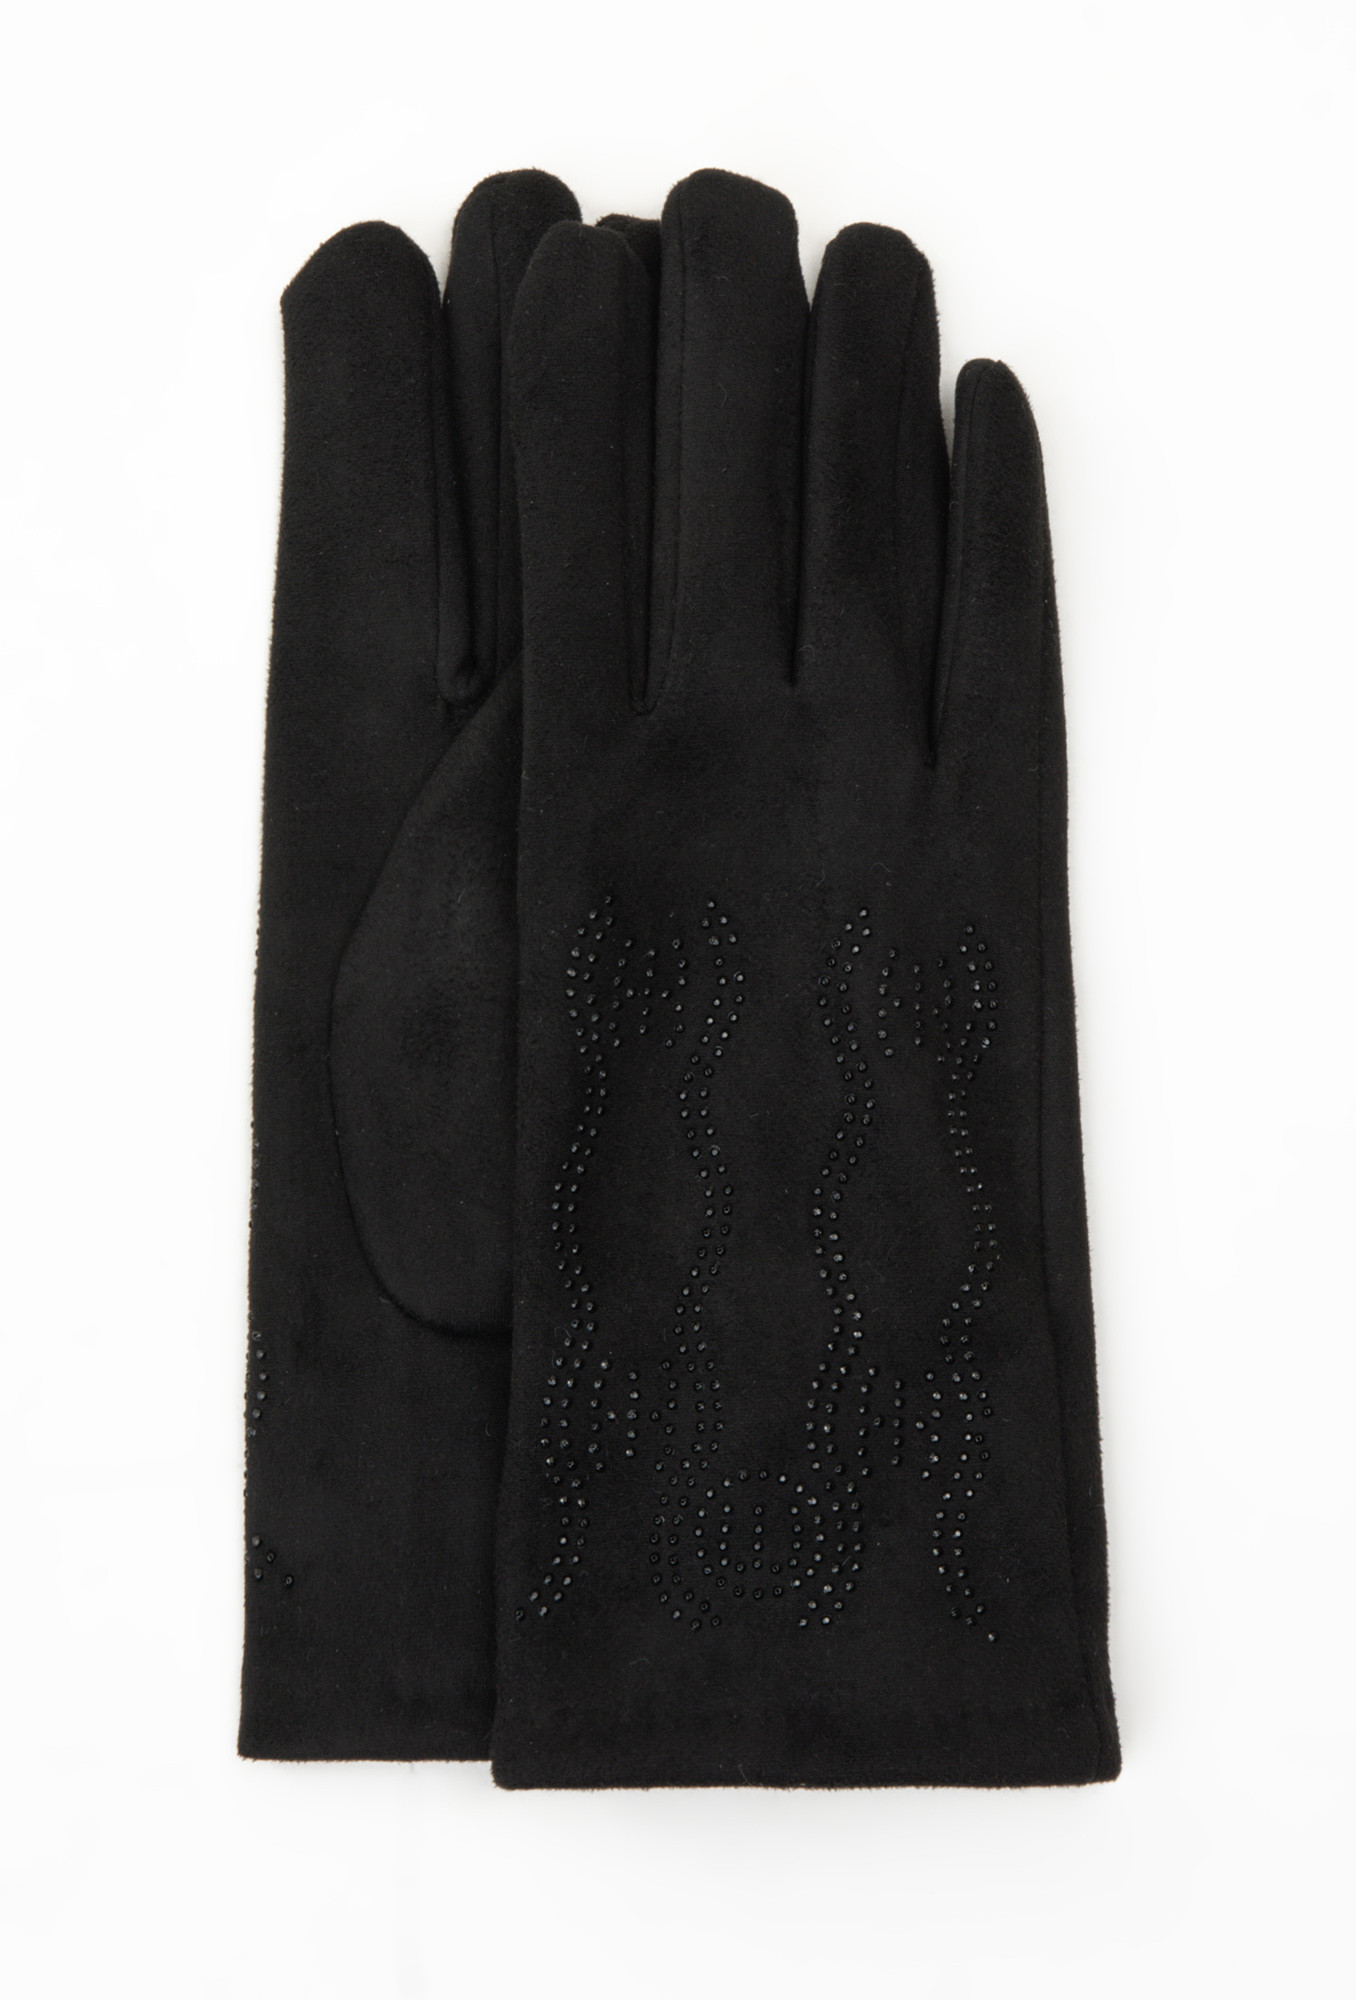 Monnari Rukavice Dámské rukavice s kamínky Black S/M